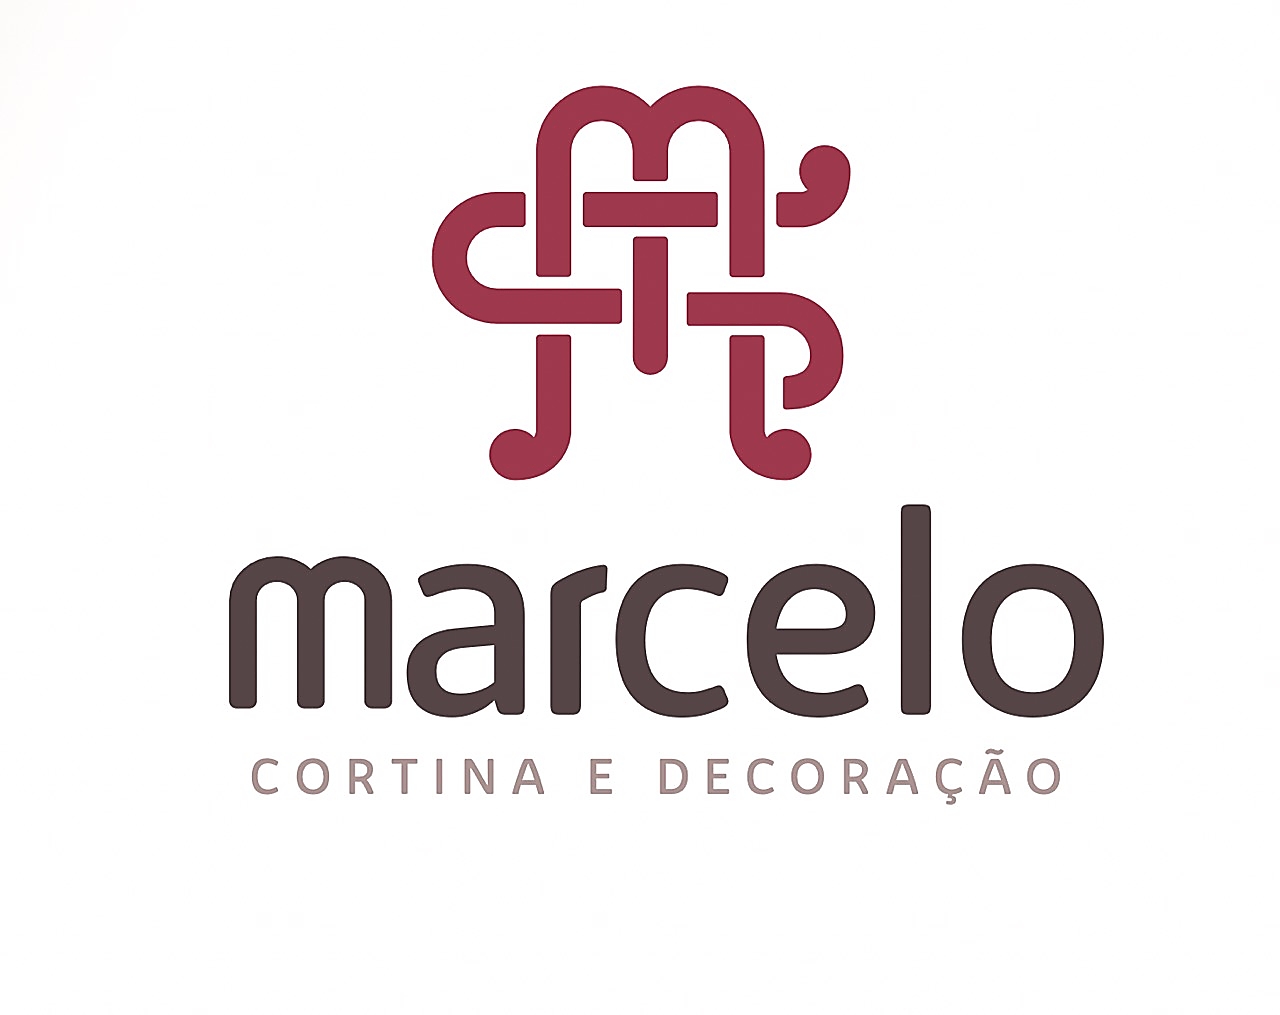 Marcelo Cortinas e Decorações